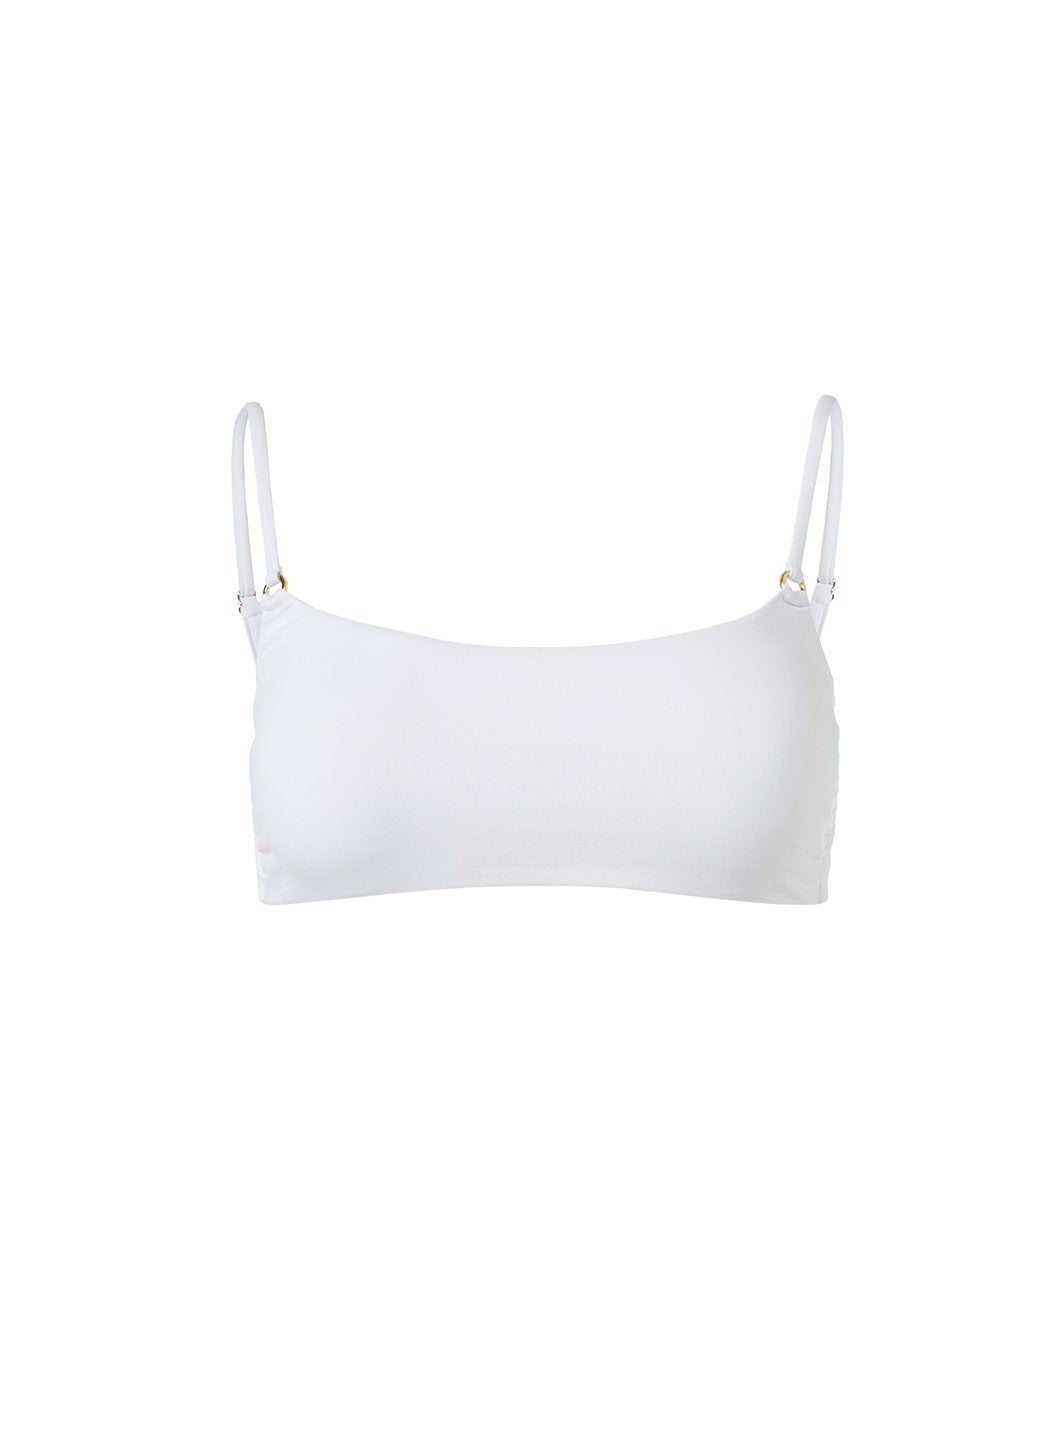 Capri White Bikini Top